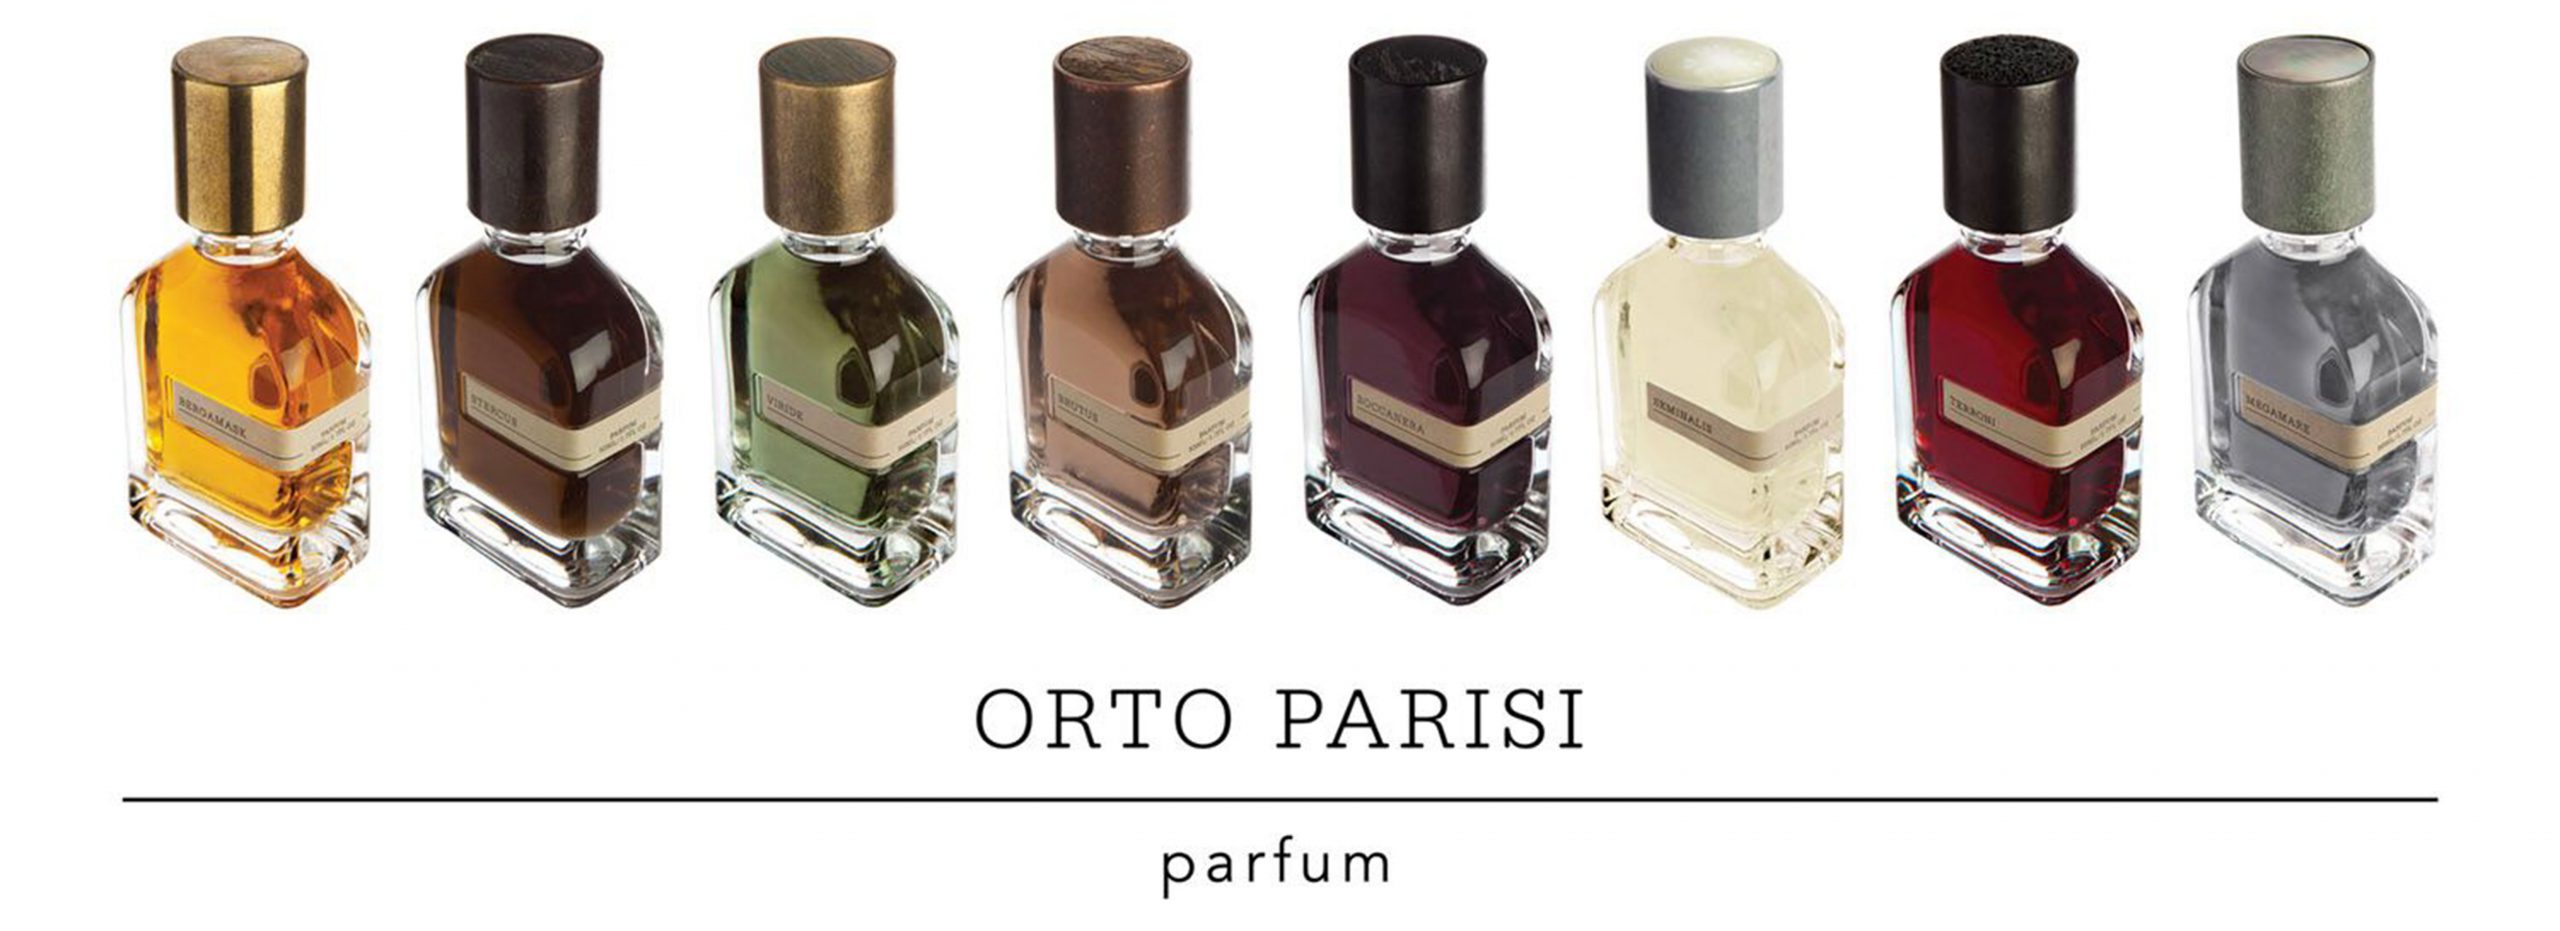 ! اورتو پاریسی همانطور که از طبیعت و خلقت جهان برای ساخت عطرهای خود ایده می گیرد، داستان هر کدام از عطرهای خود را به بهترین شکل و با تصاویری هنری و خاص به تصویر می کشد.